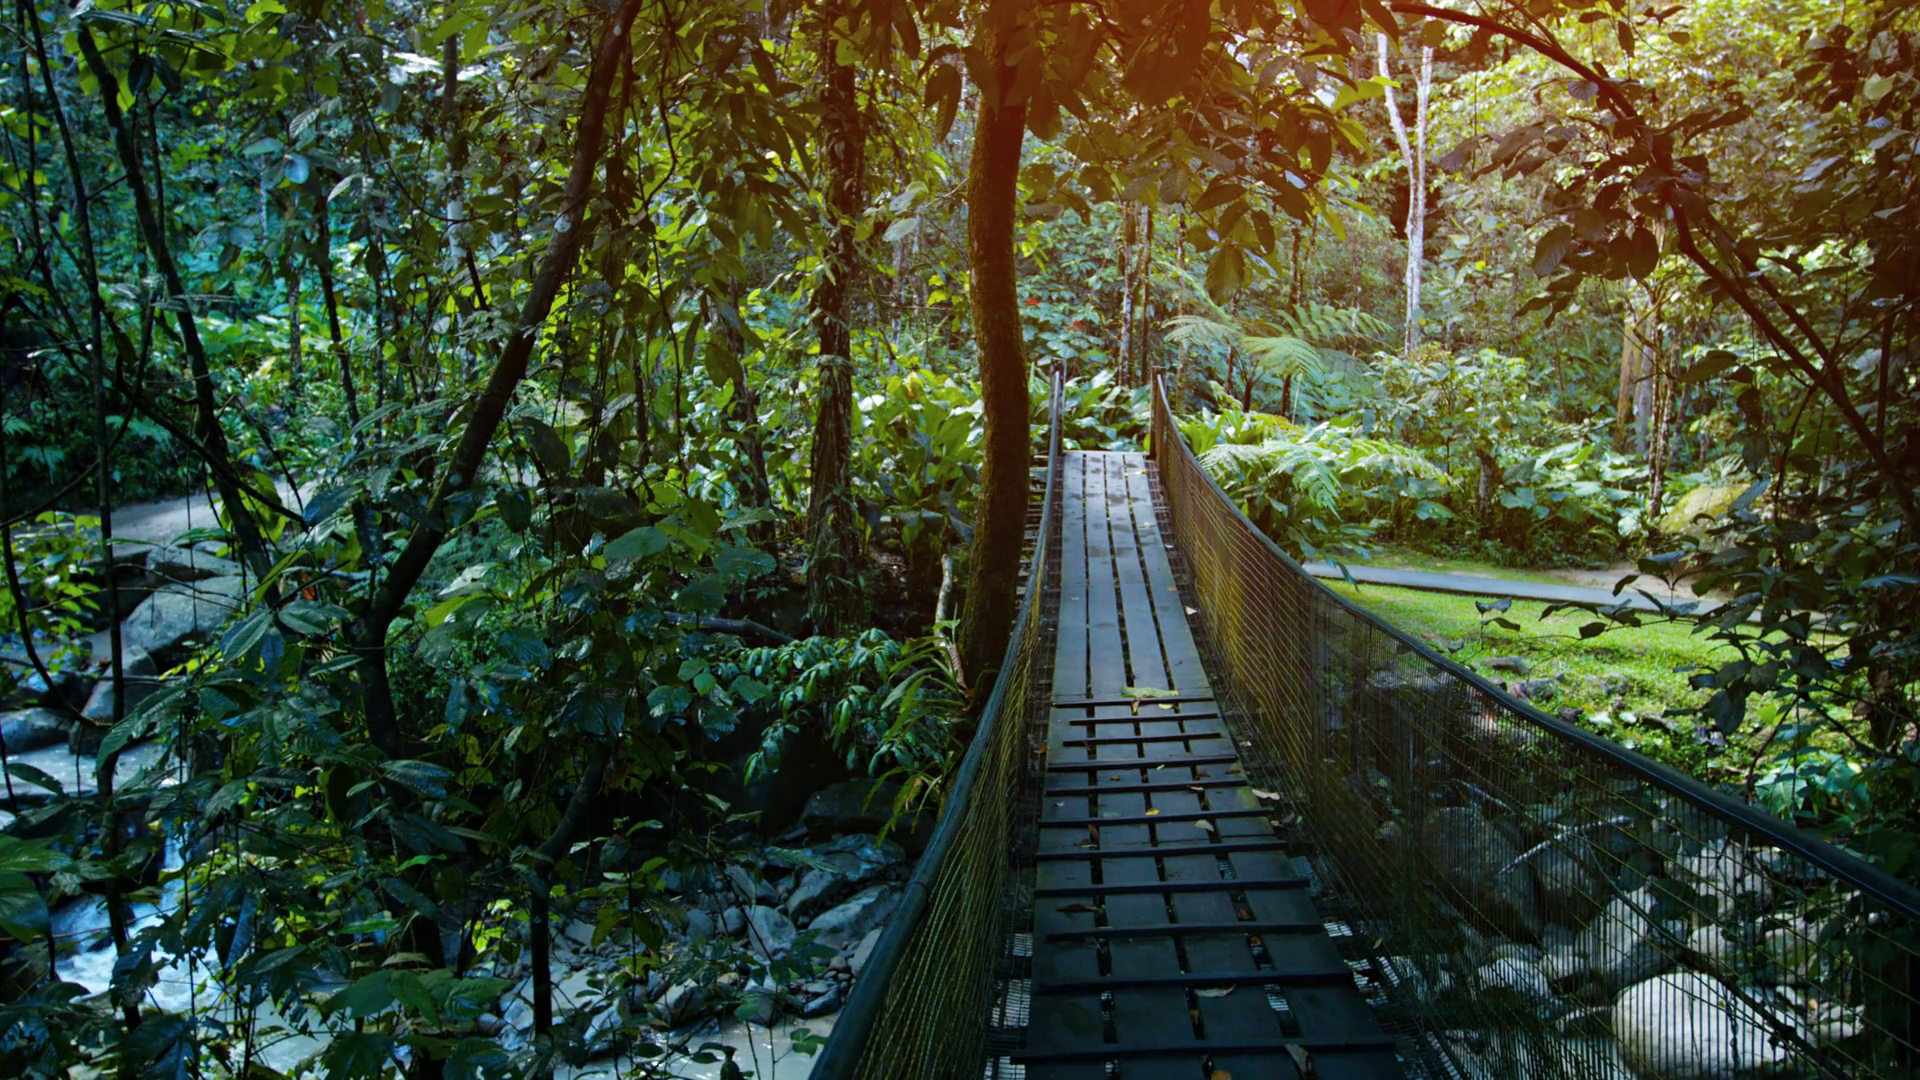 Handmade Pedestrian Bridge over Stream at Nature Park in Borneo ...